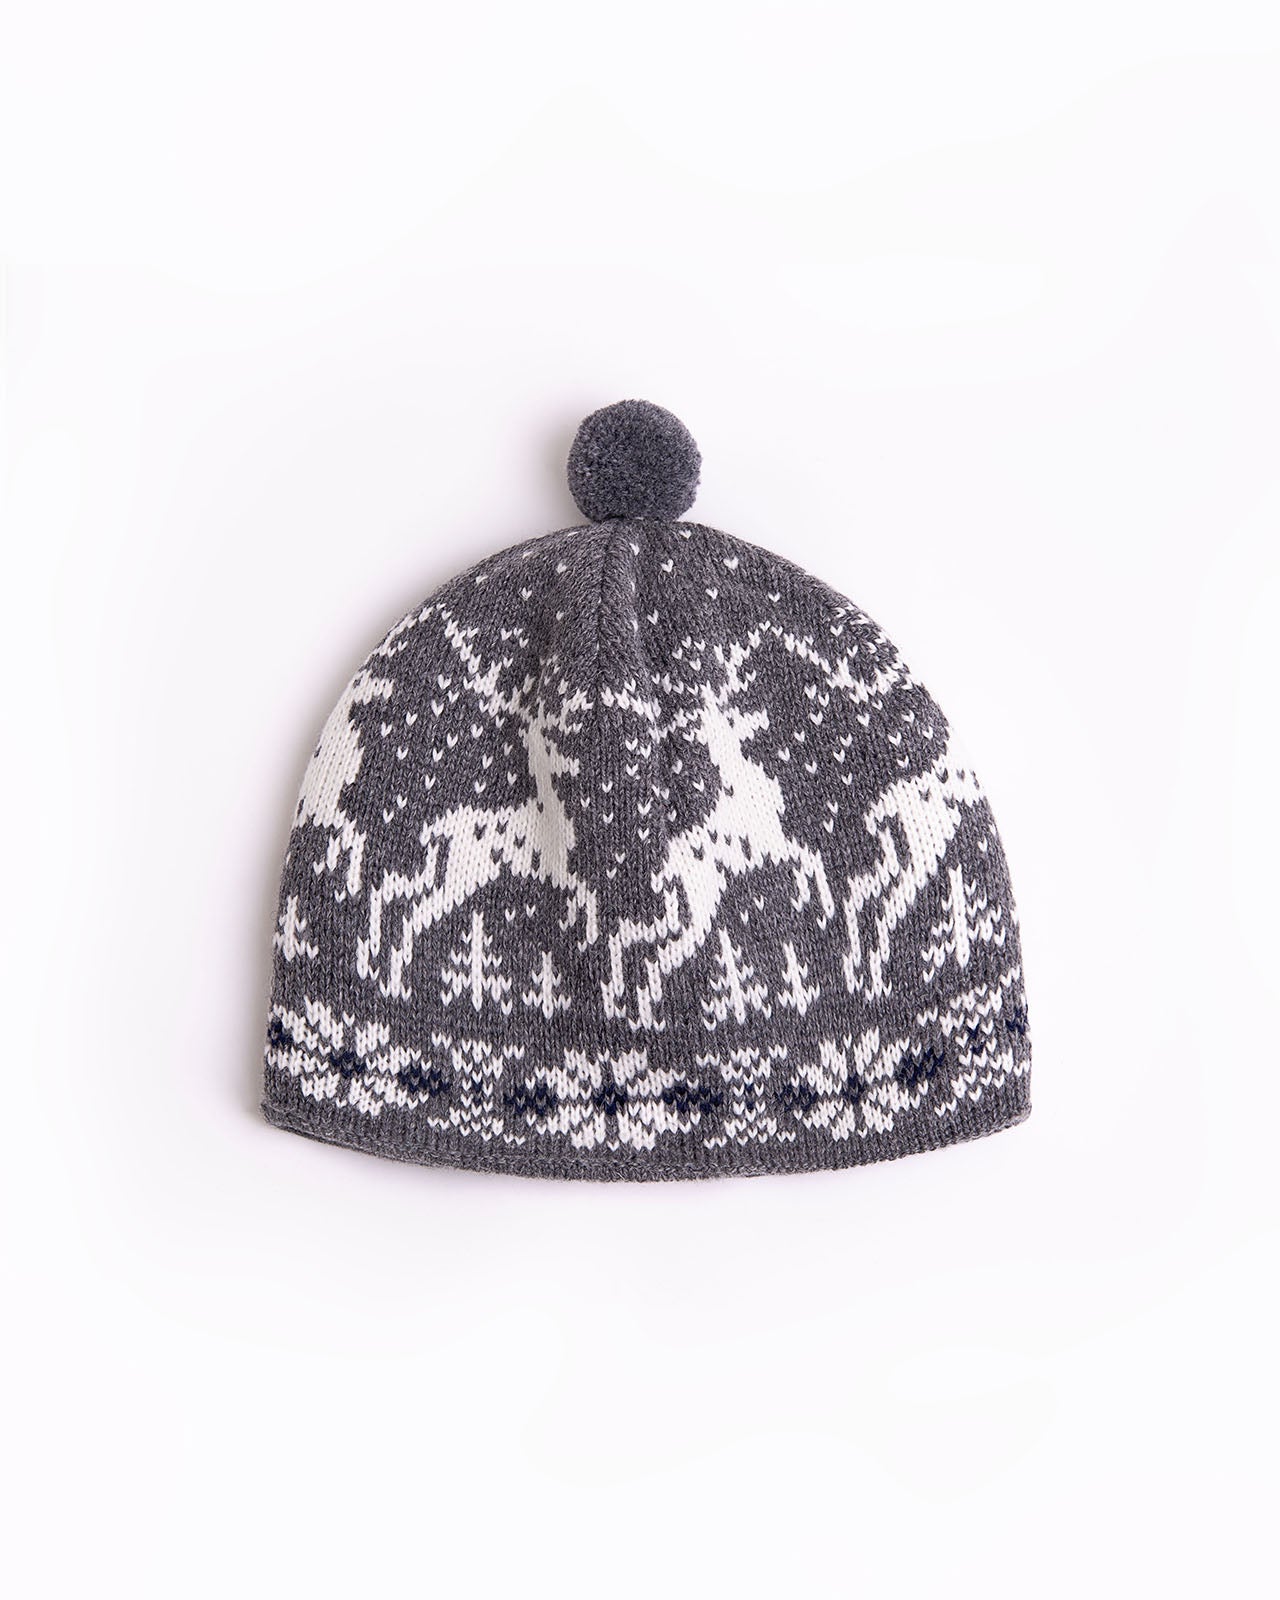 Christmas wool hat with reindeers